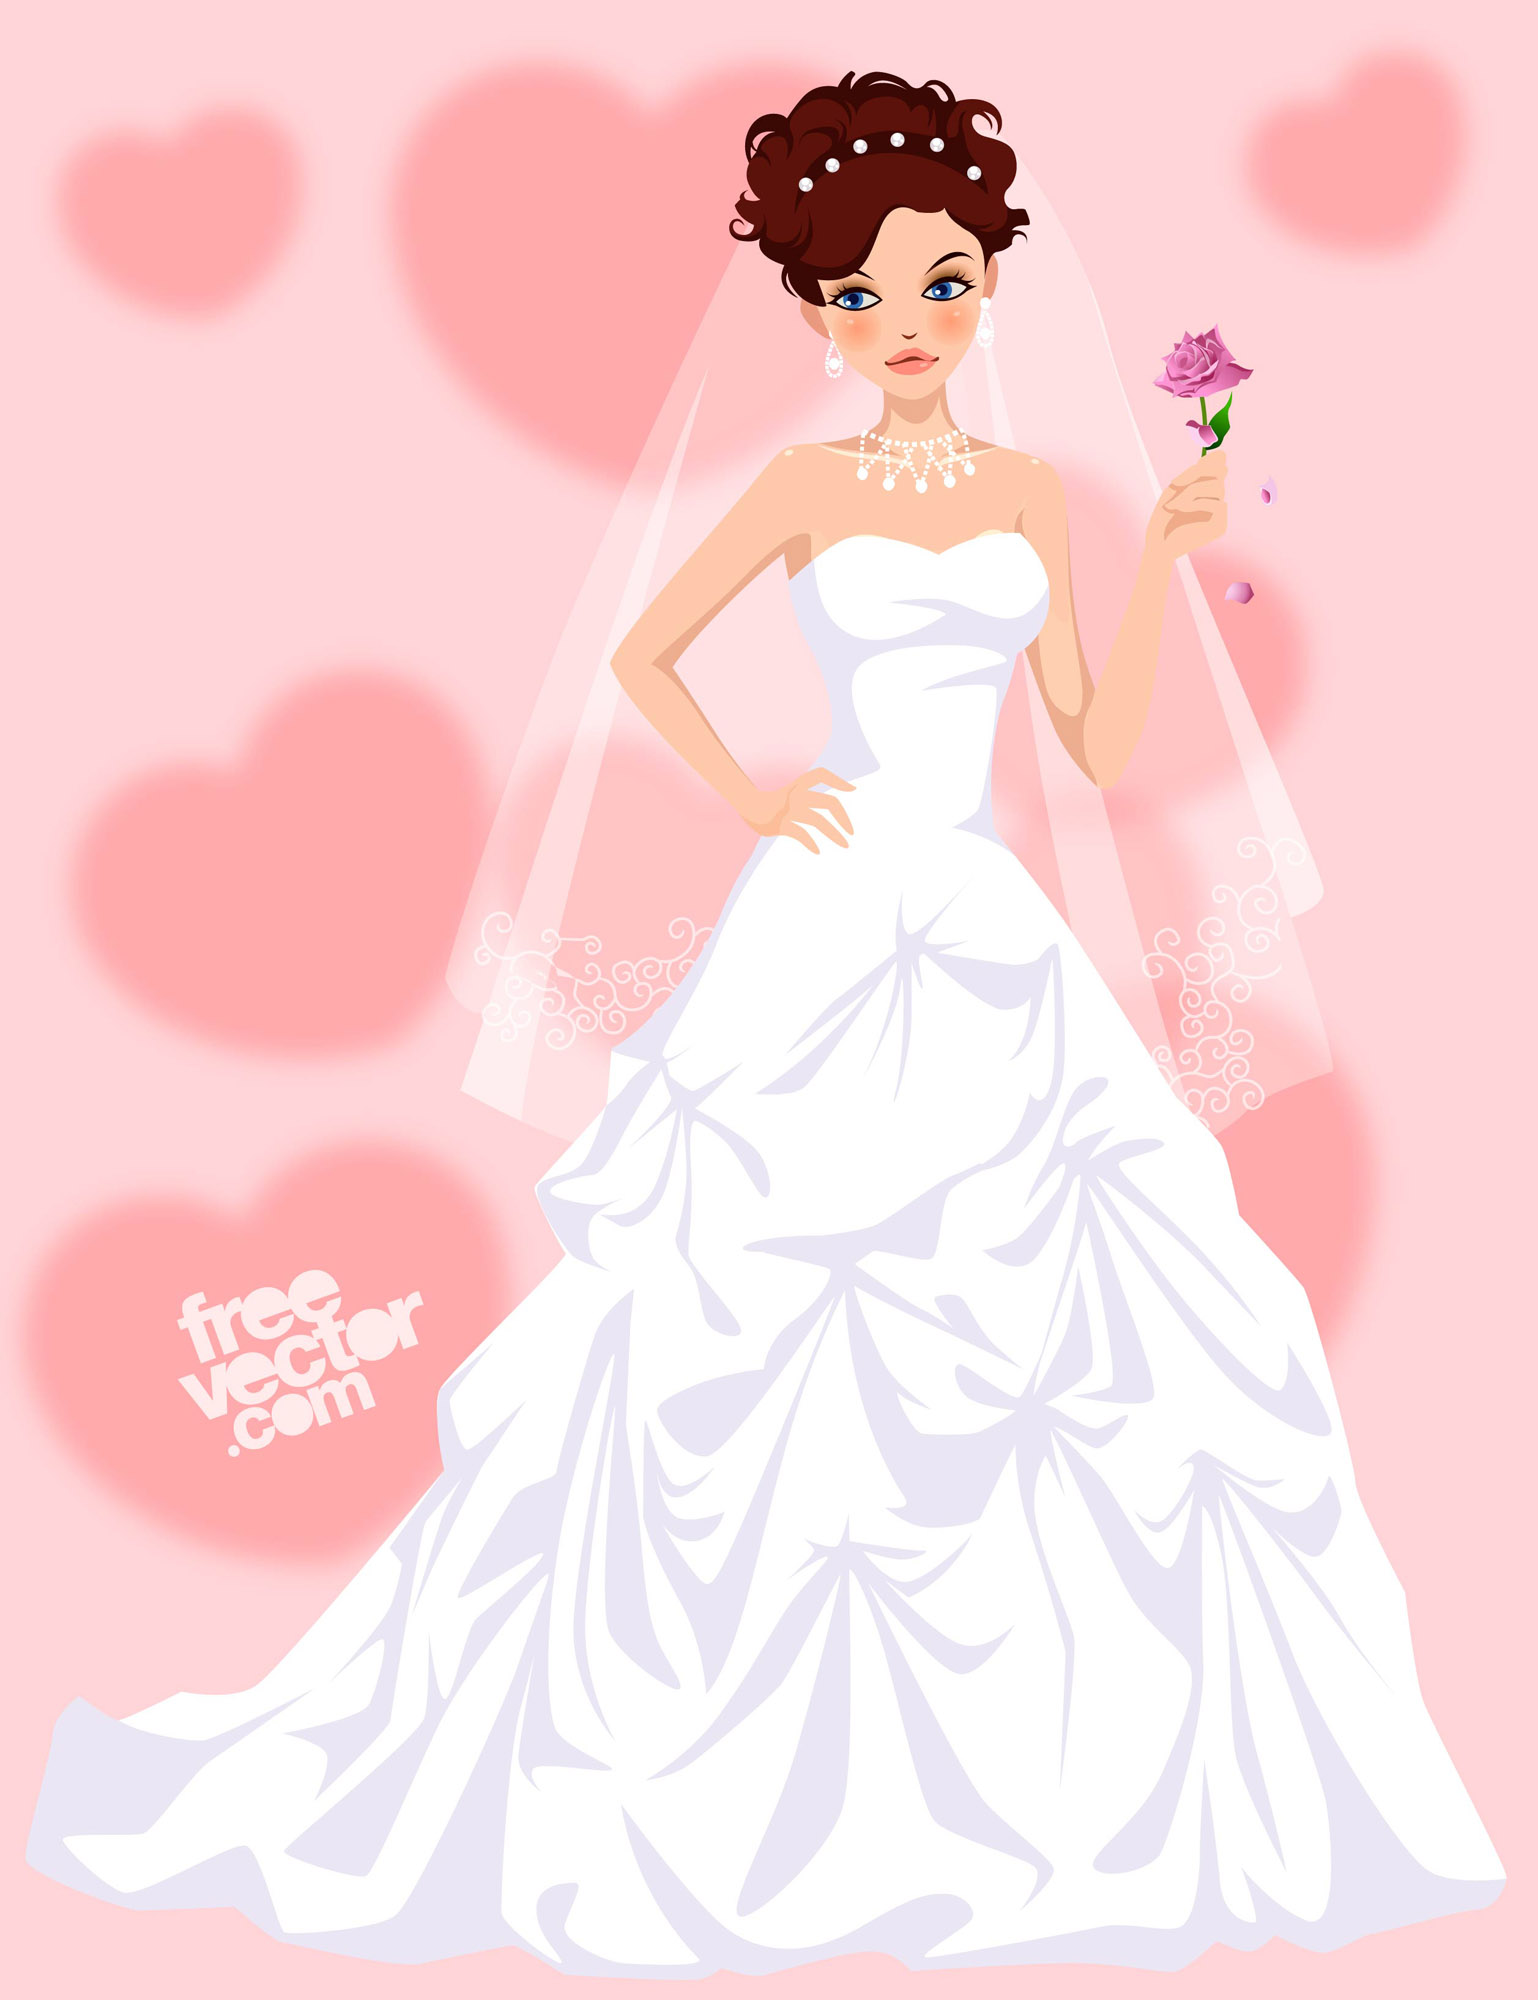 Download Bride Vector Art & Graphics | freevector.com